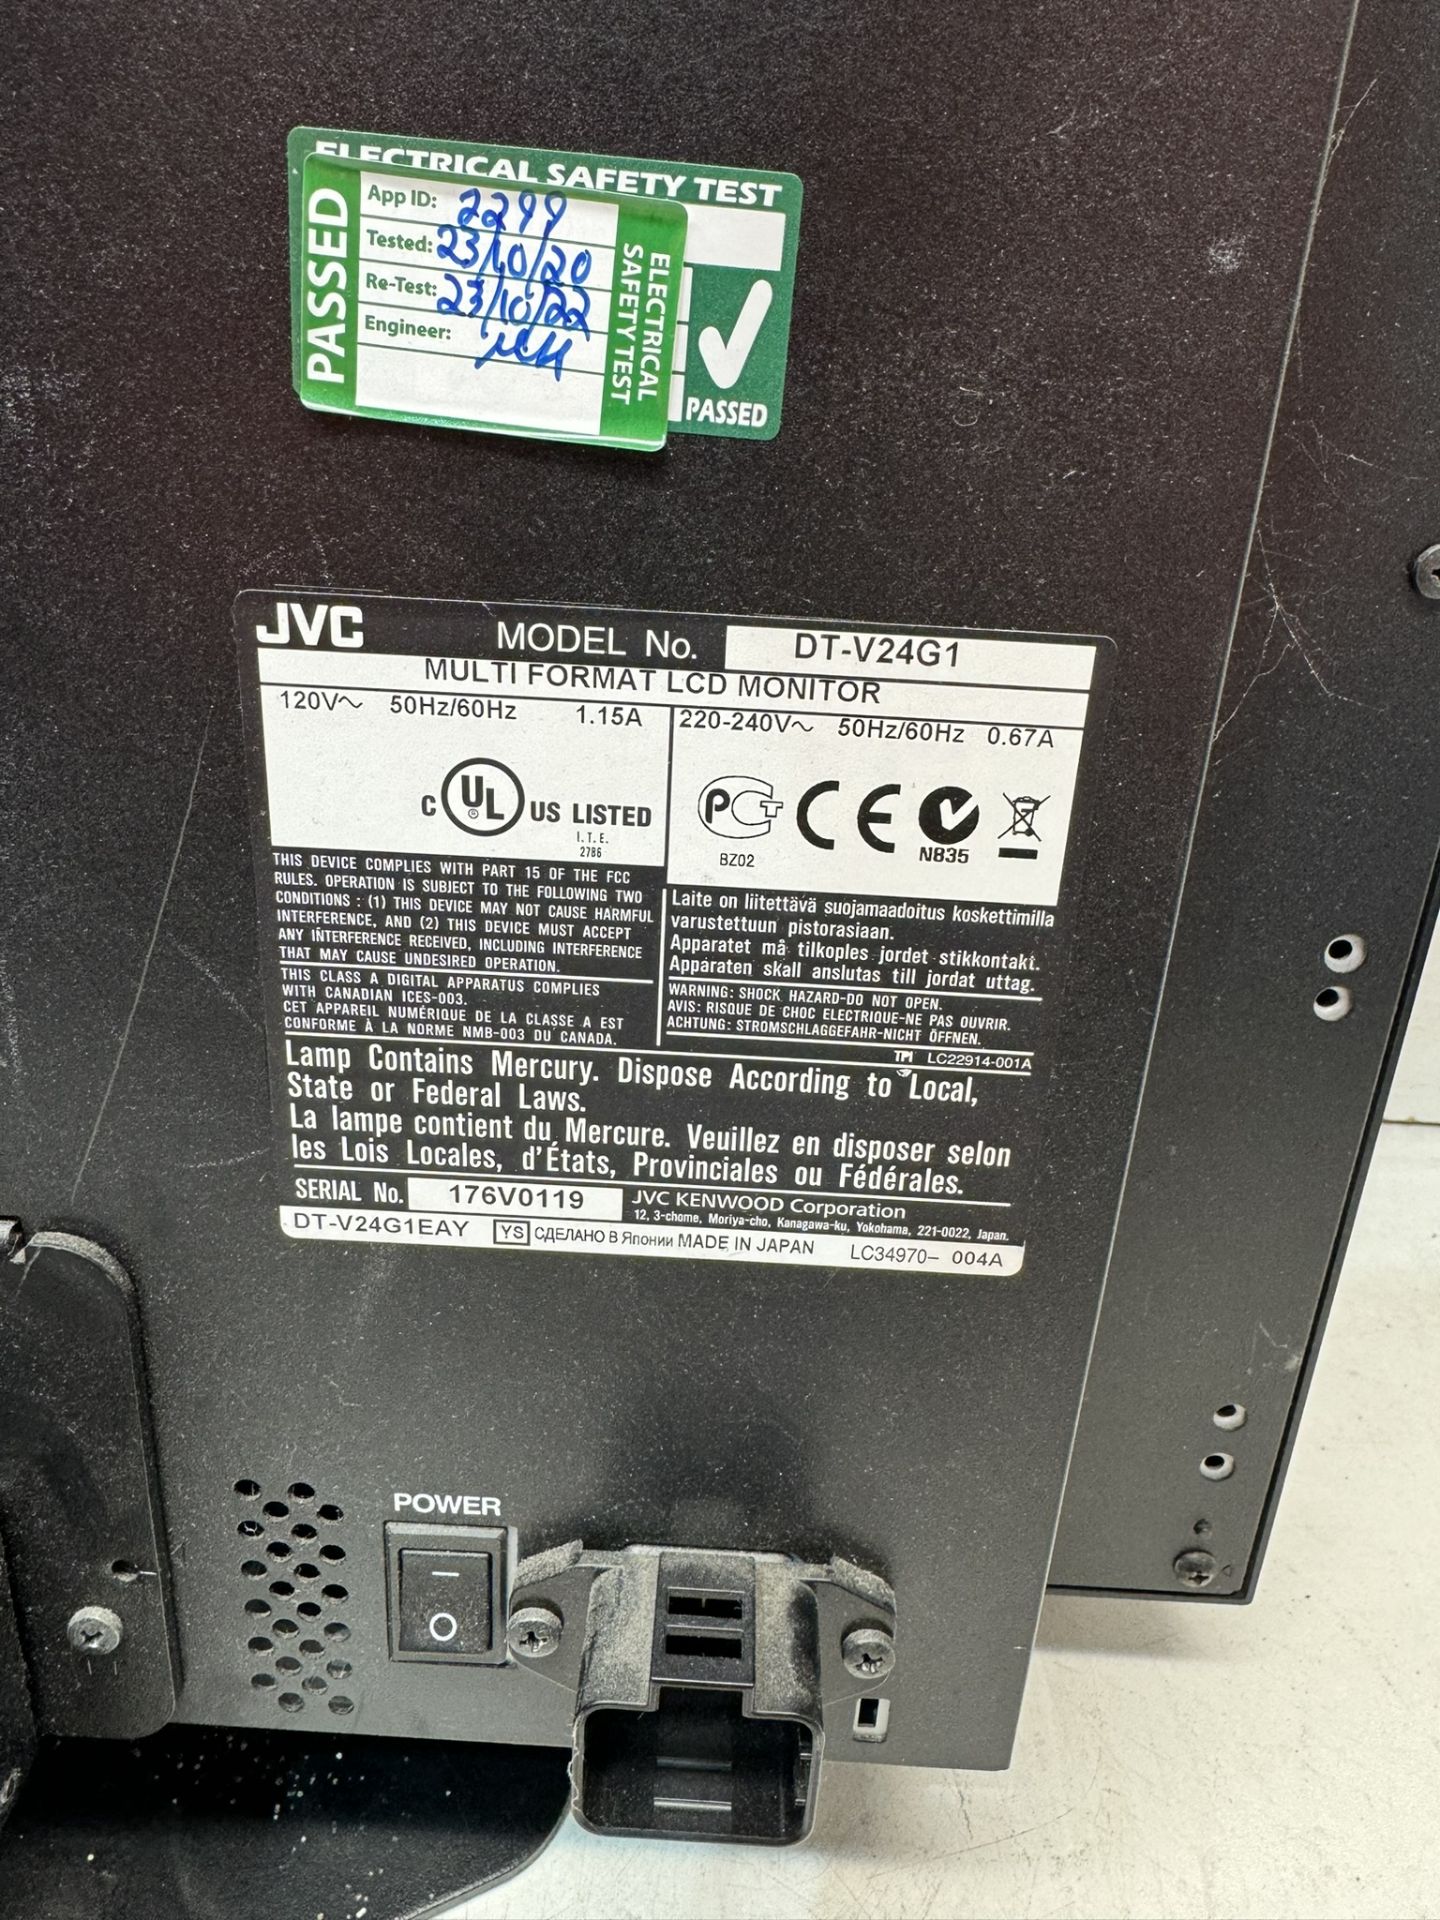 JVC DT-V24G1 Full HD 24” Studio LCD Monitor - Image 4 of 4